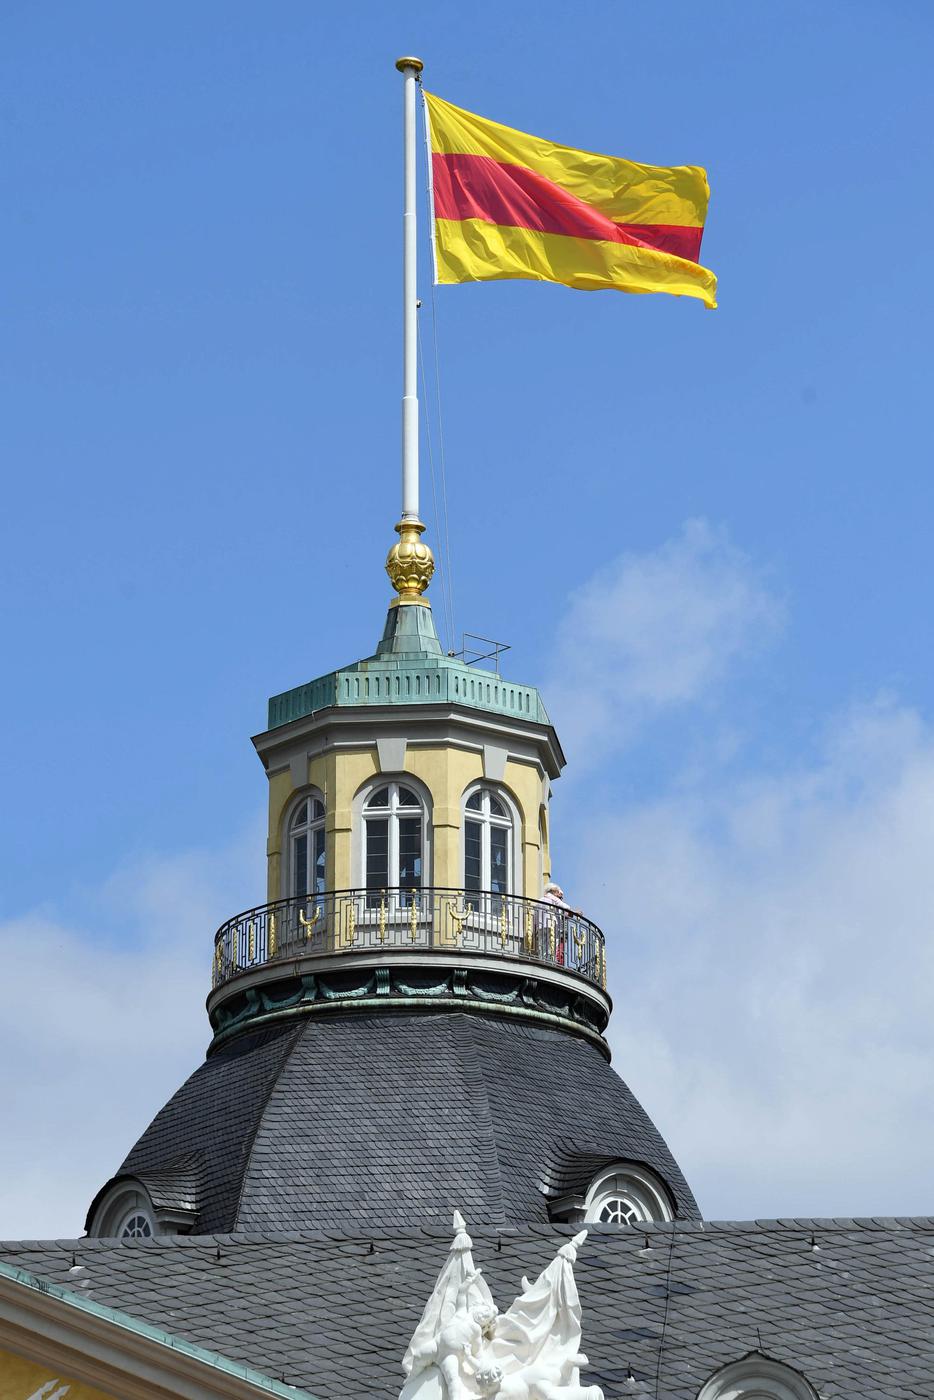 11.07.2018, Baden-Württemberg, Karlsruhe: Auf dem Schloss Karlsruhe weht die badische Flagge. Nachdem der Ministerpräsident von Baden-Württemberg am Dienstag eine Ausnahme von der Landesverordnung zugelassen hat, ist es für das Badische Landesmuseum wieder möglich gewesen die Flagge zu hissen. Foto: Uli Deck/dpa +++ dpa-Bildfunk +++